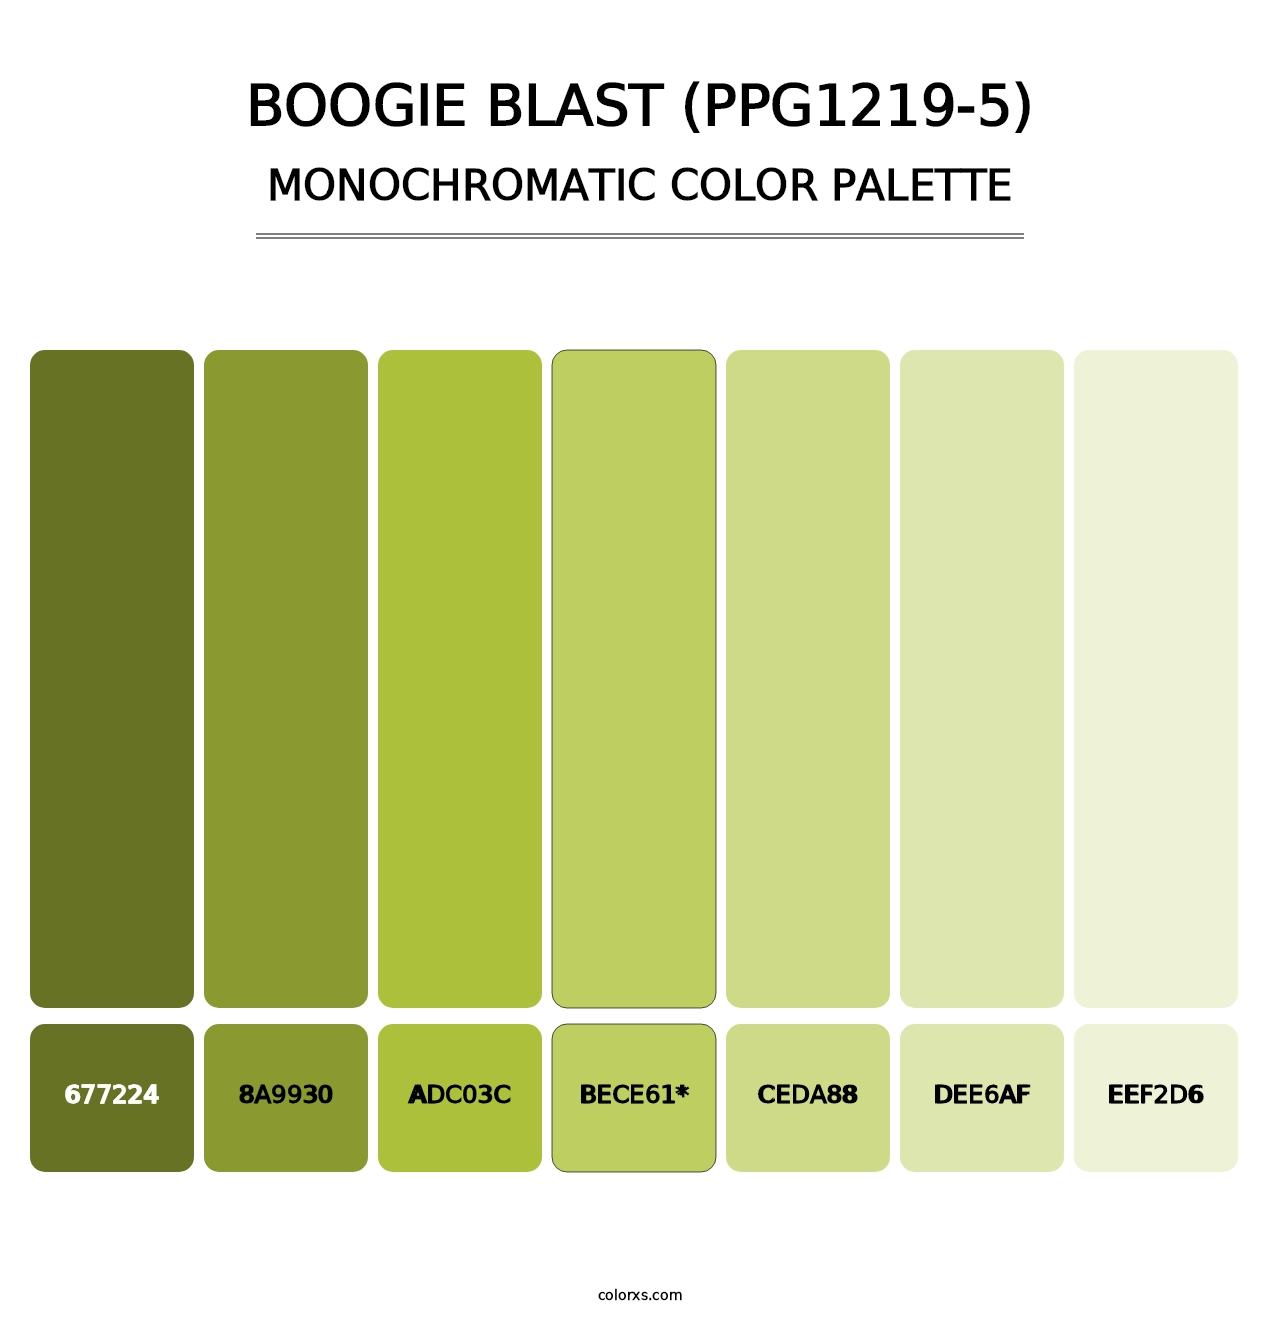 Boogie Blast (PPG1219-5) - Monochromatic Color Palette